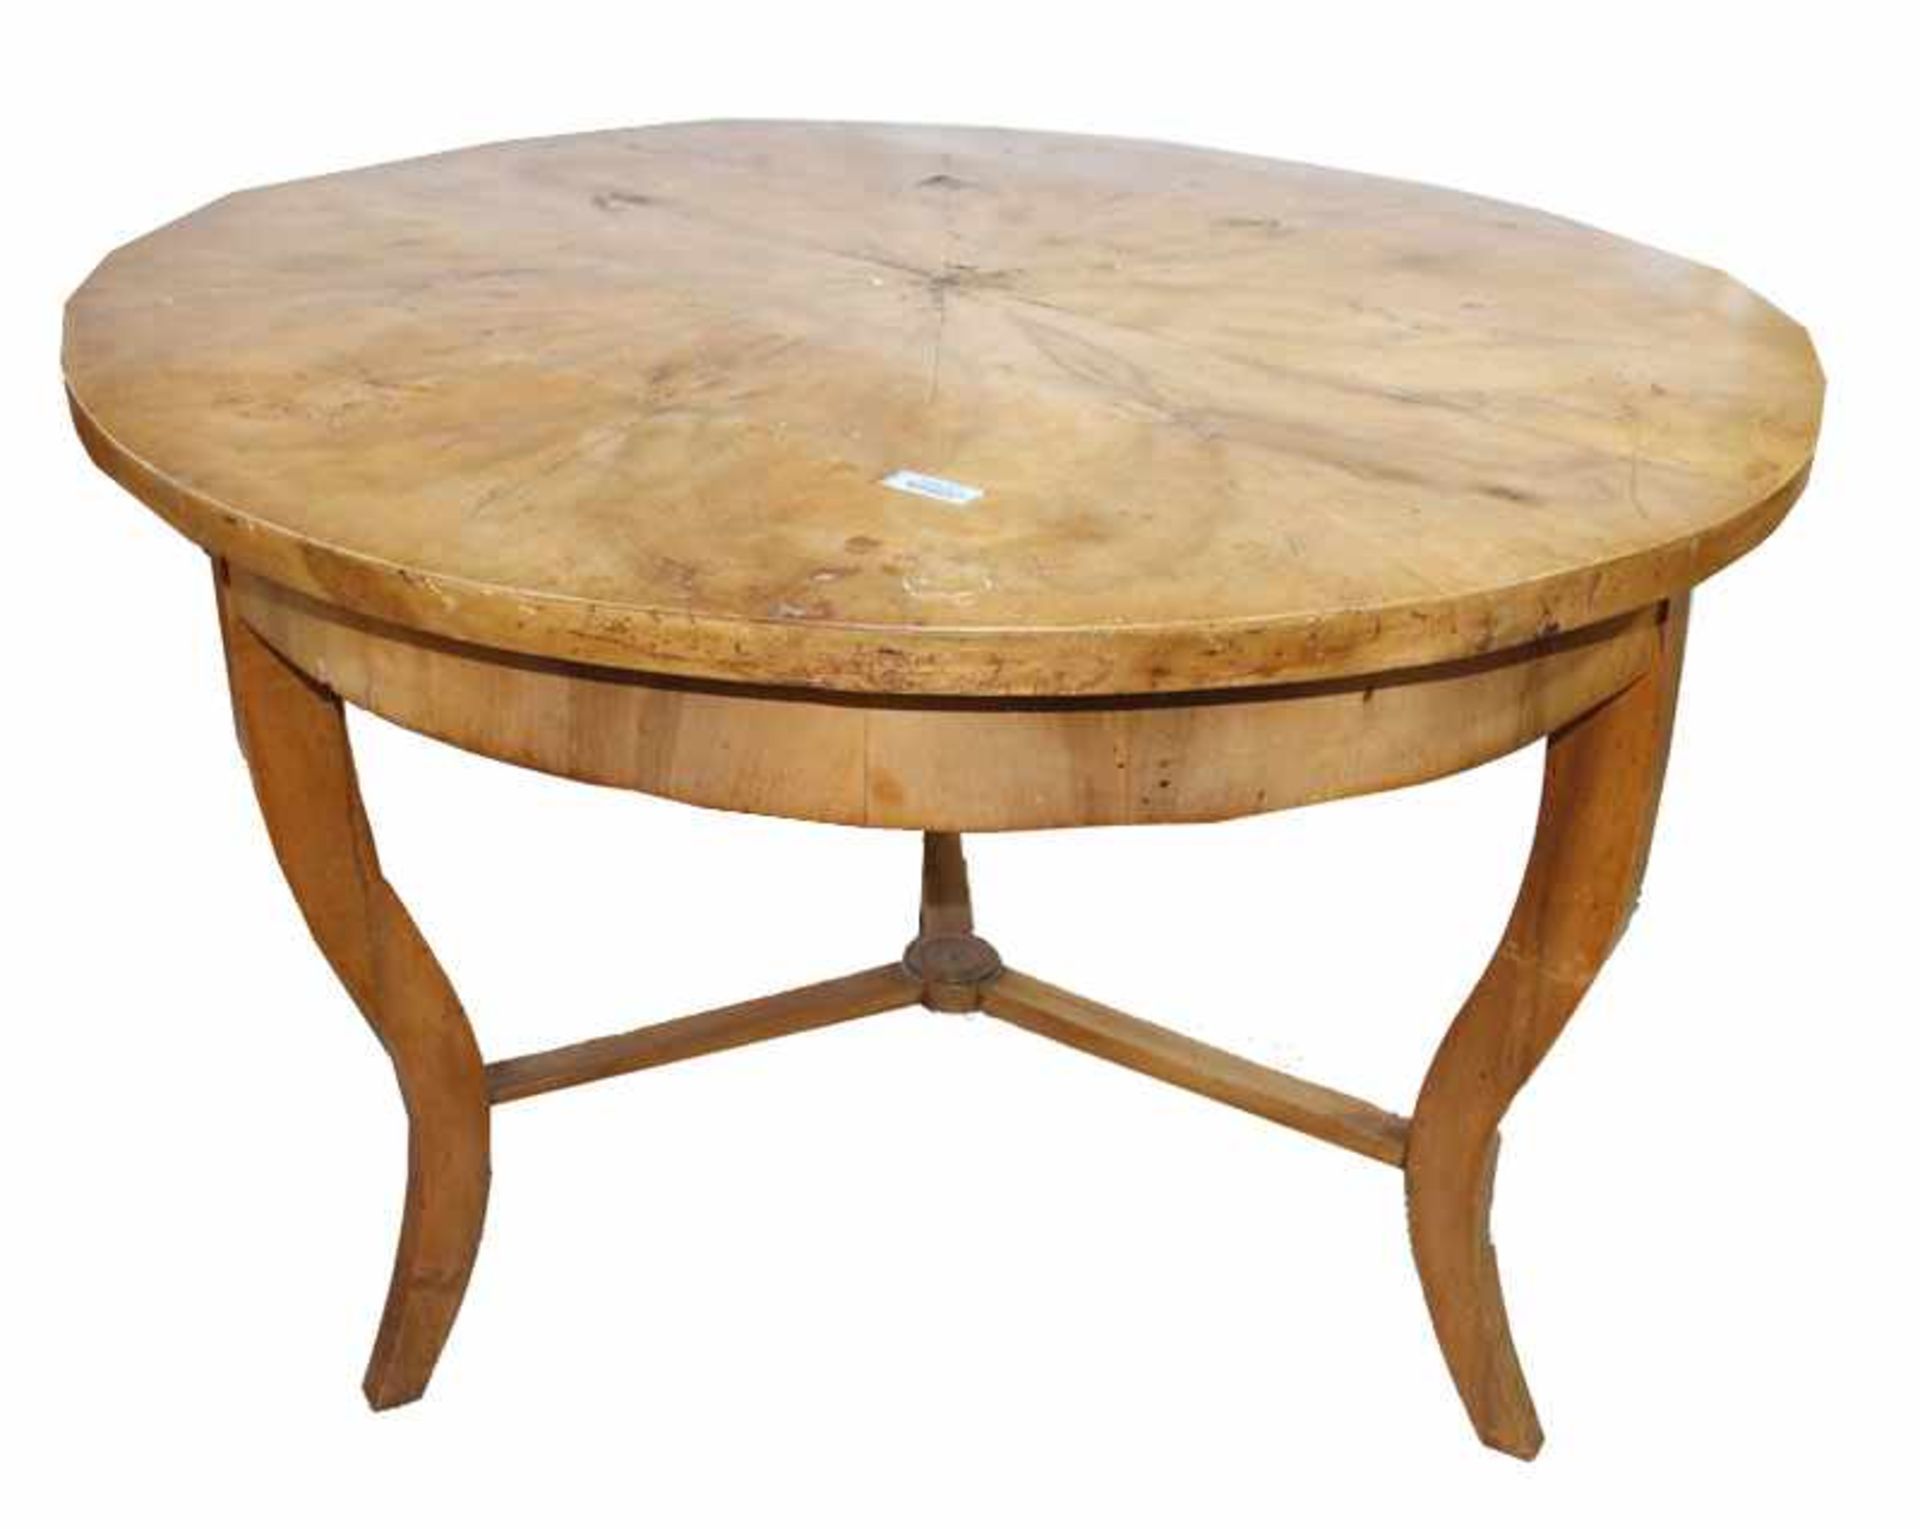 Runder Tisch auf geschwungenen Beinen, H 74 cm, D 103 cm, Tischplatte beschädigt, Gebrauchsspuren (